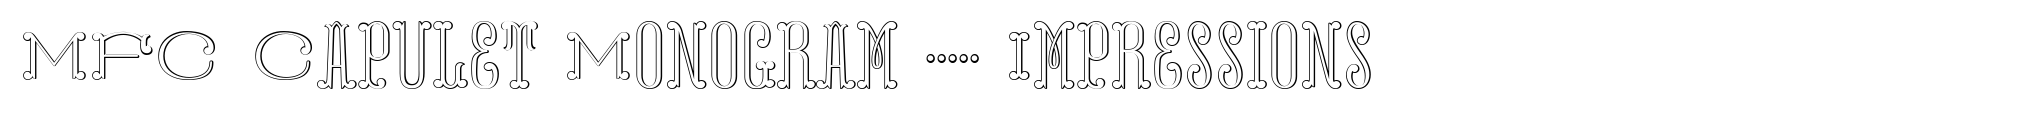 MFC Capulet Monogram 10000 Impressions image